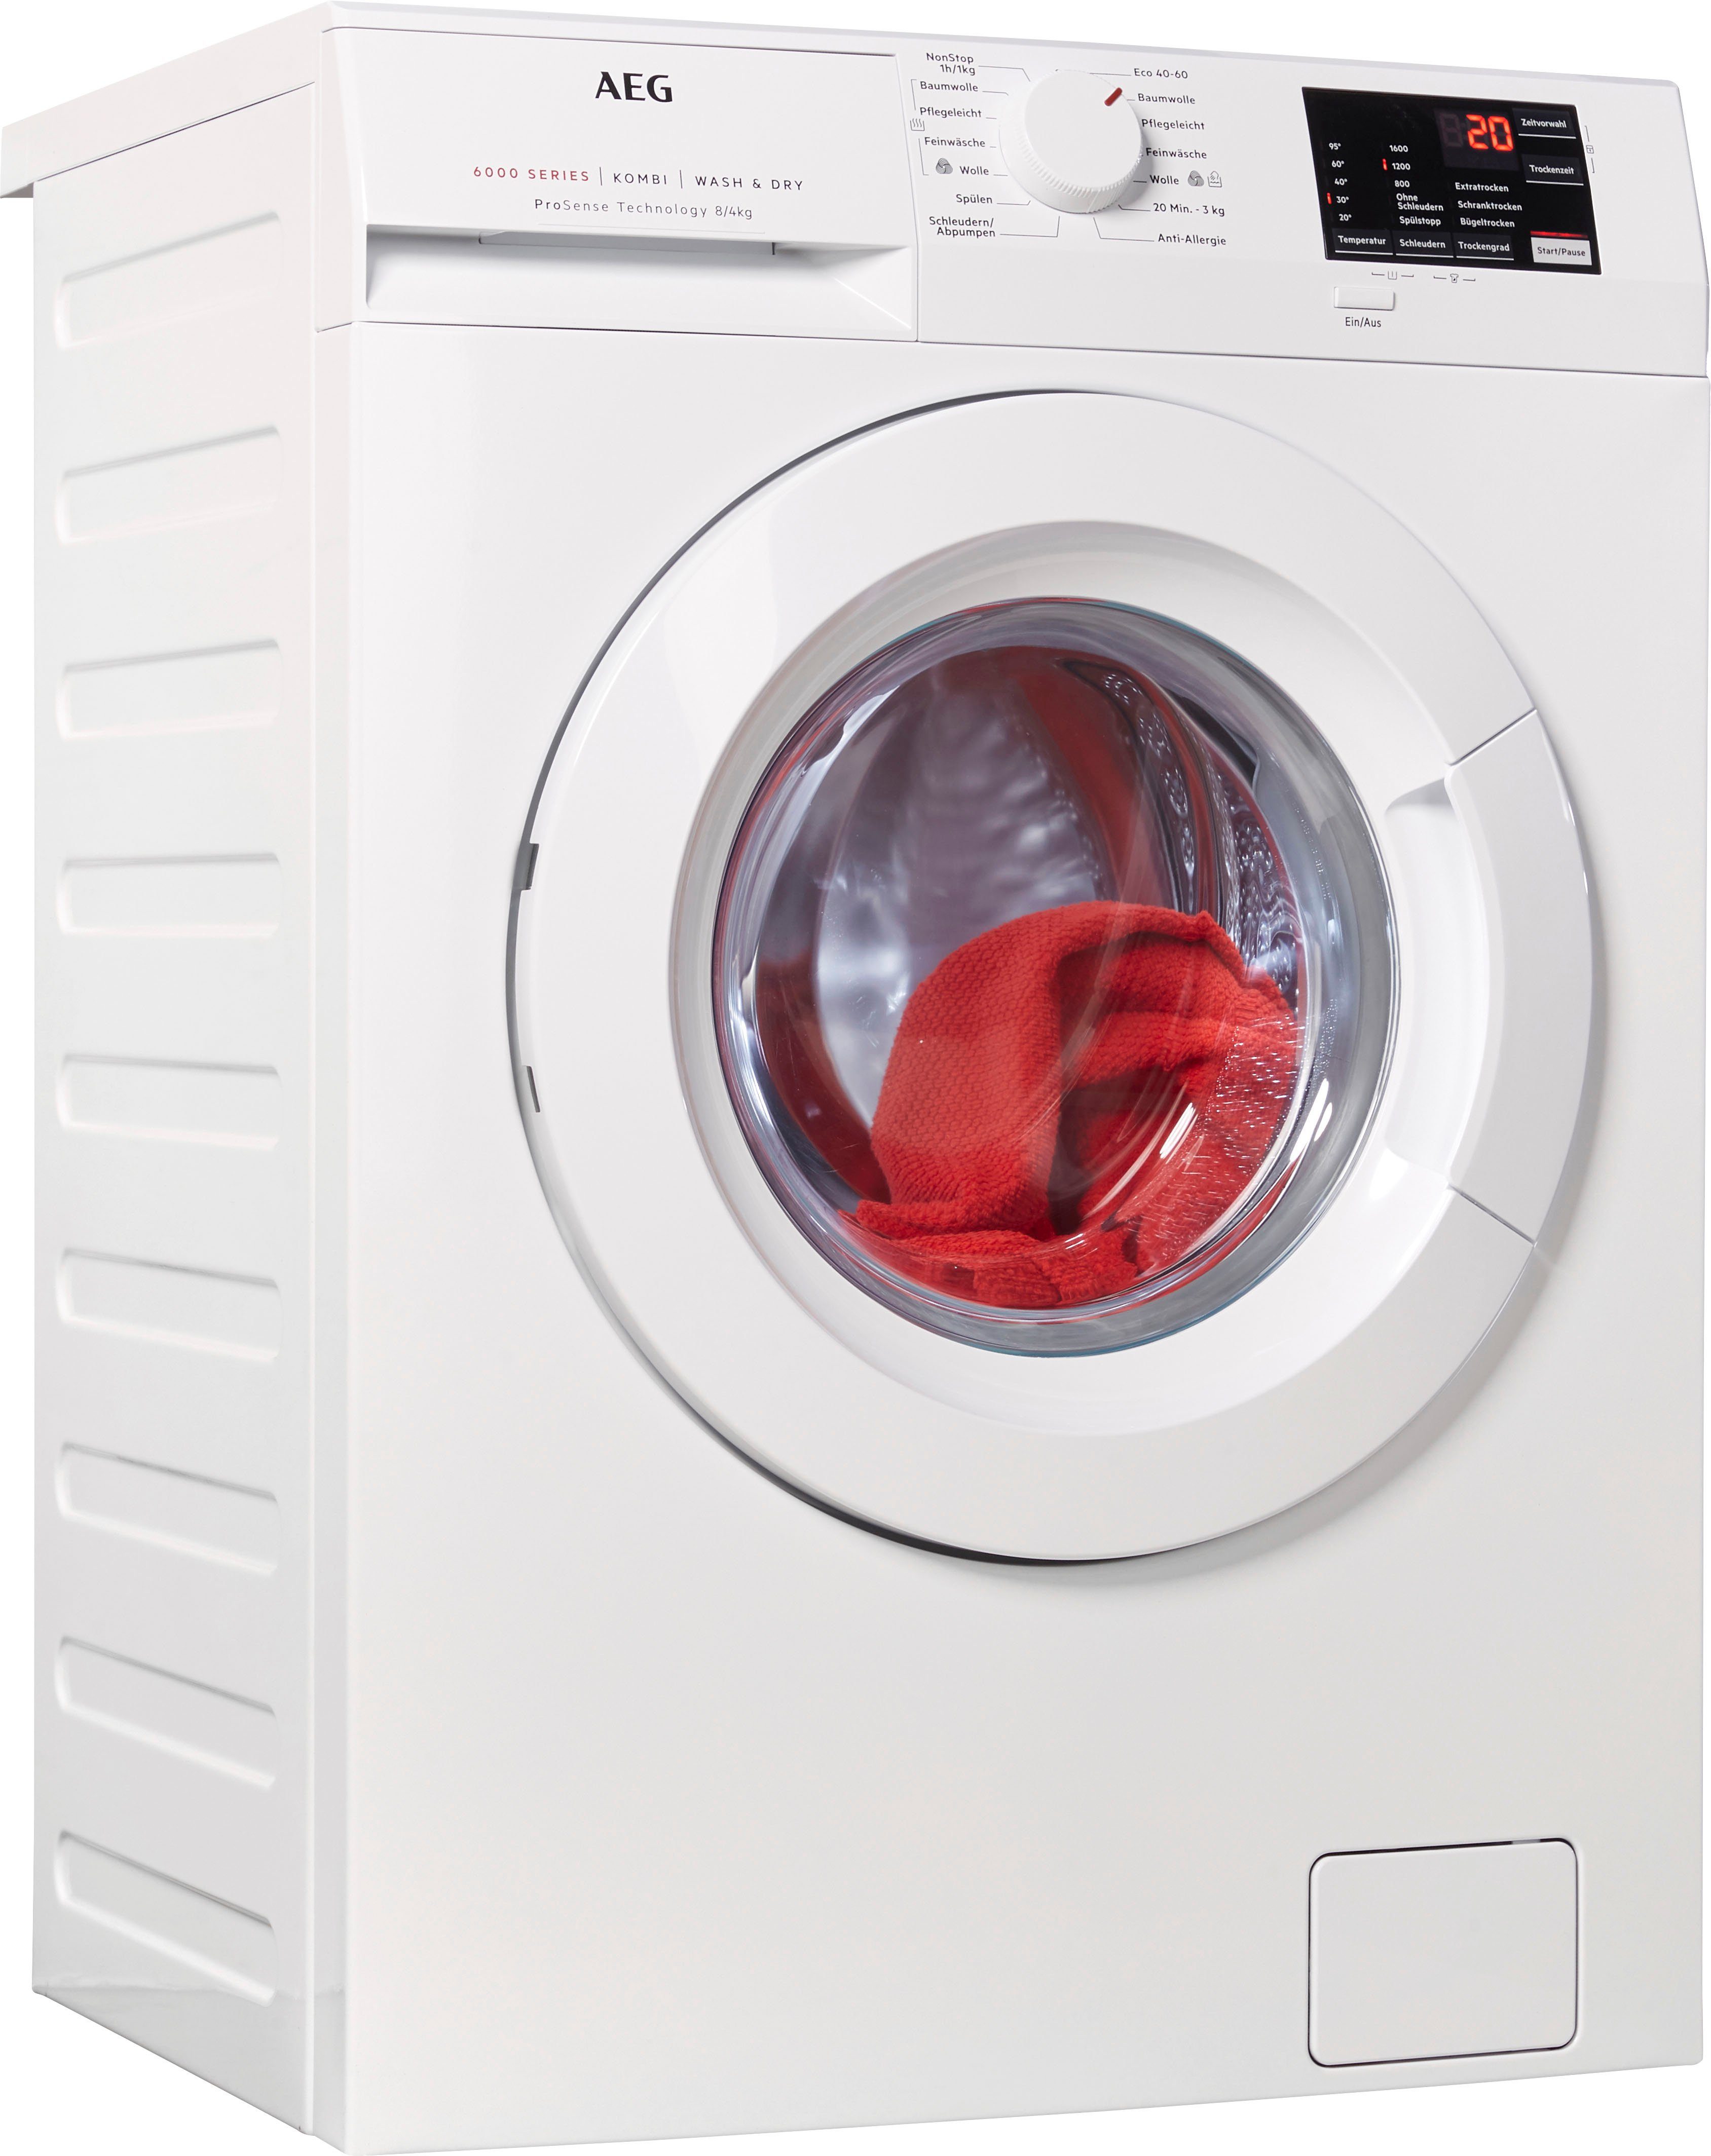 AEG Waschtrockner L6WB54684 914600100 online kaufen | OTTO